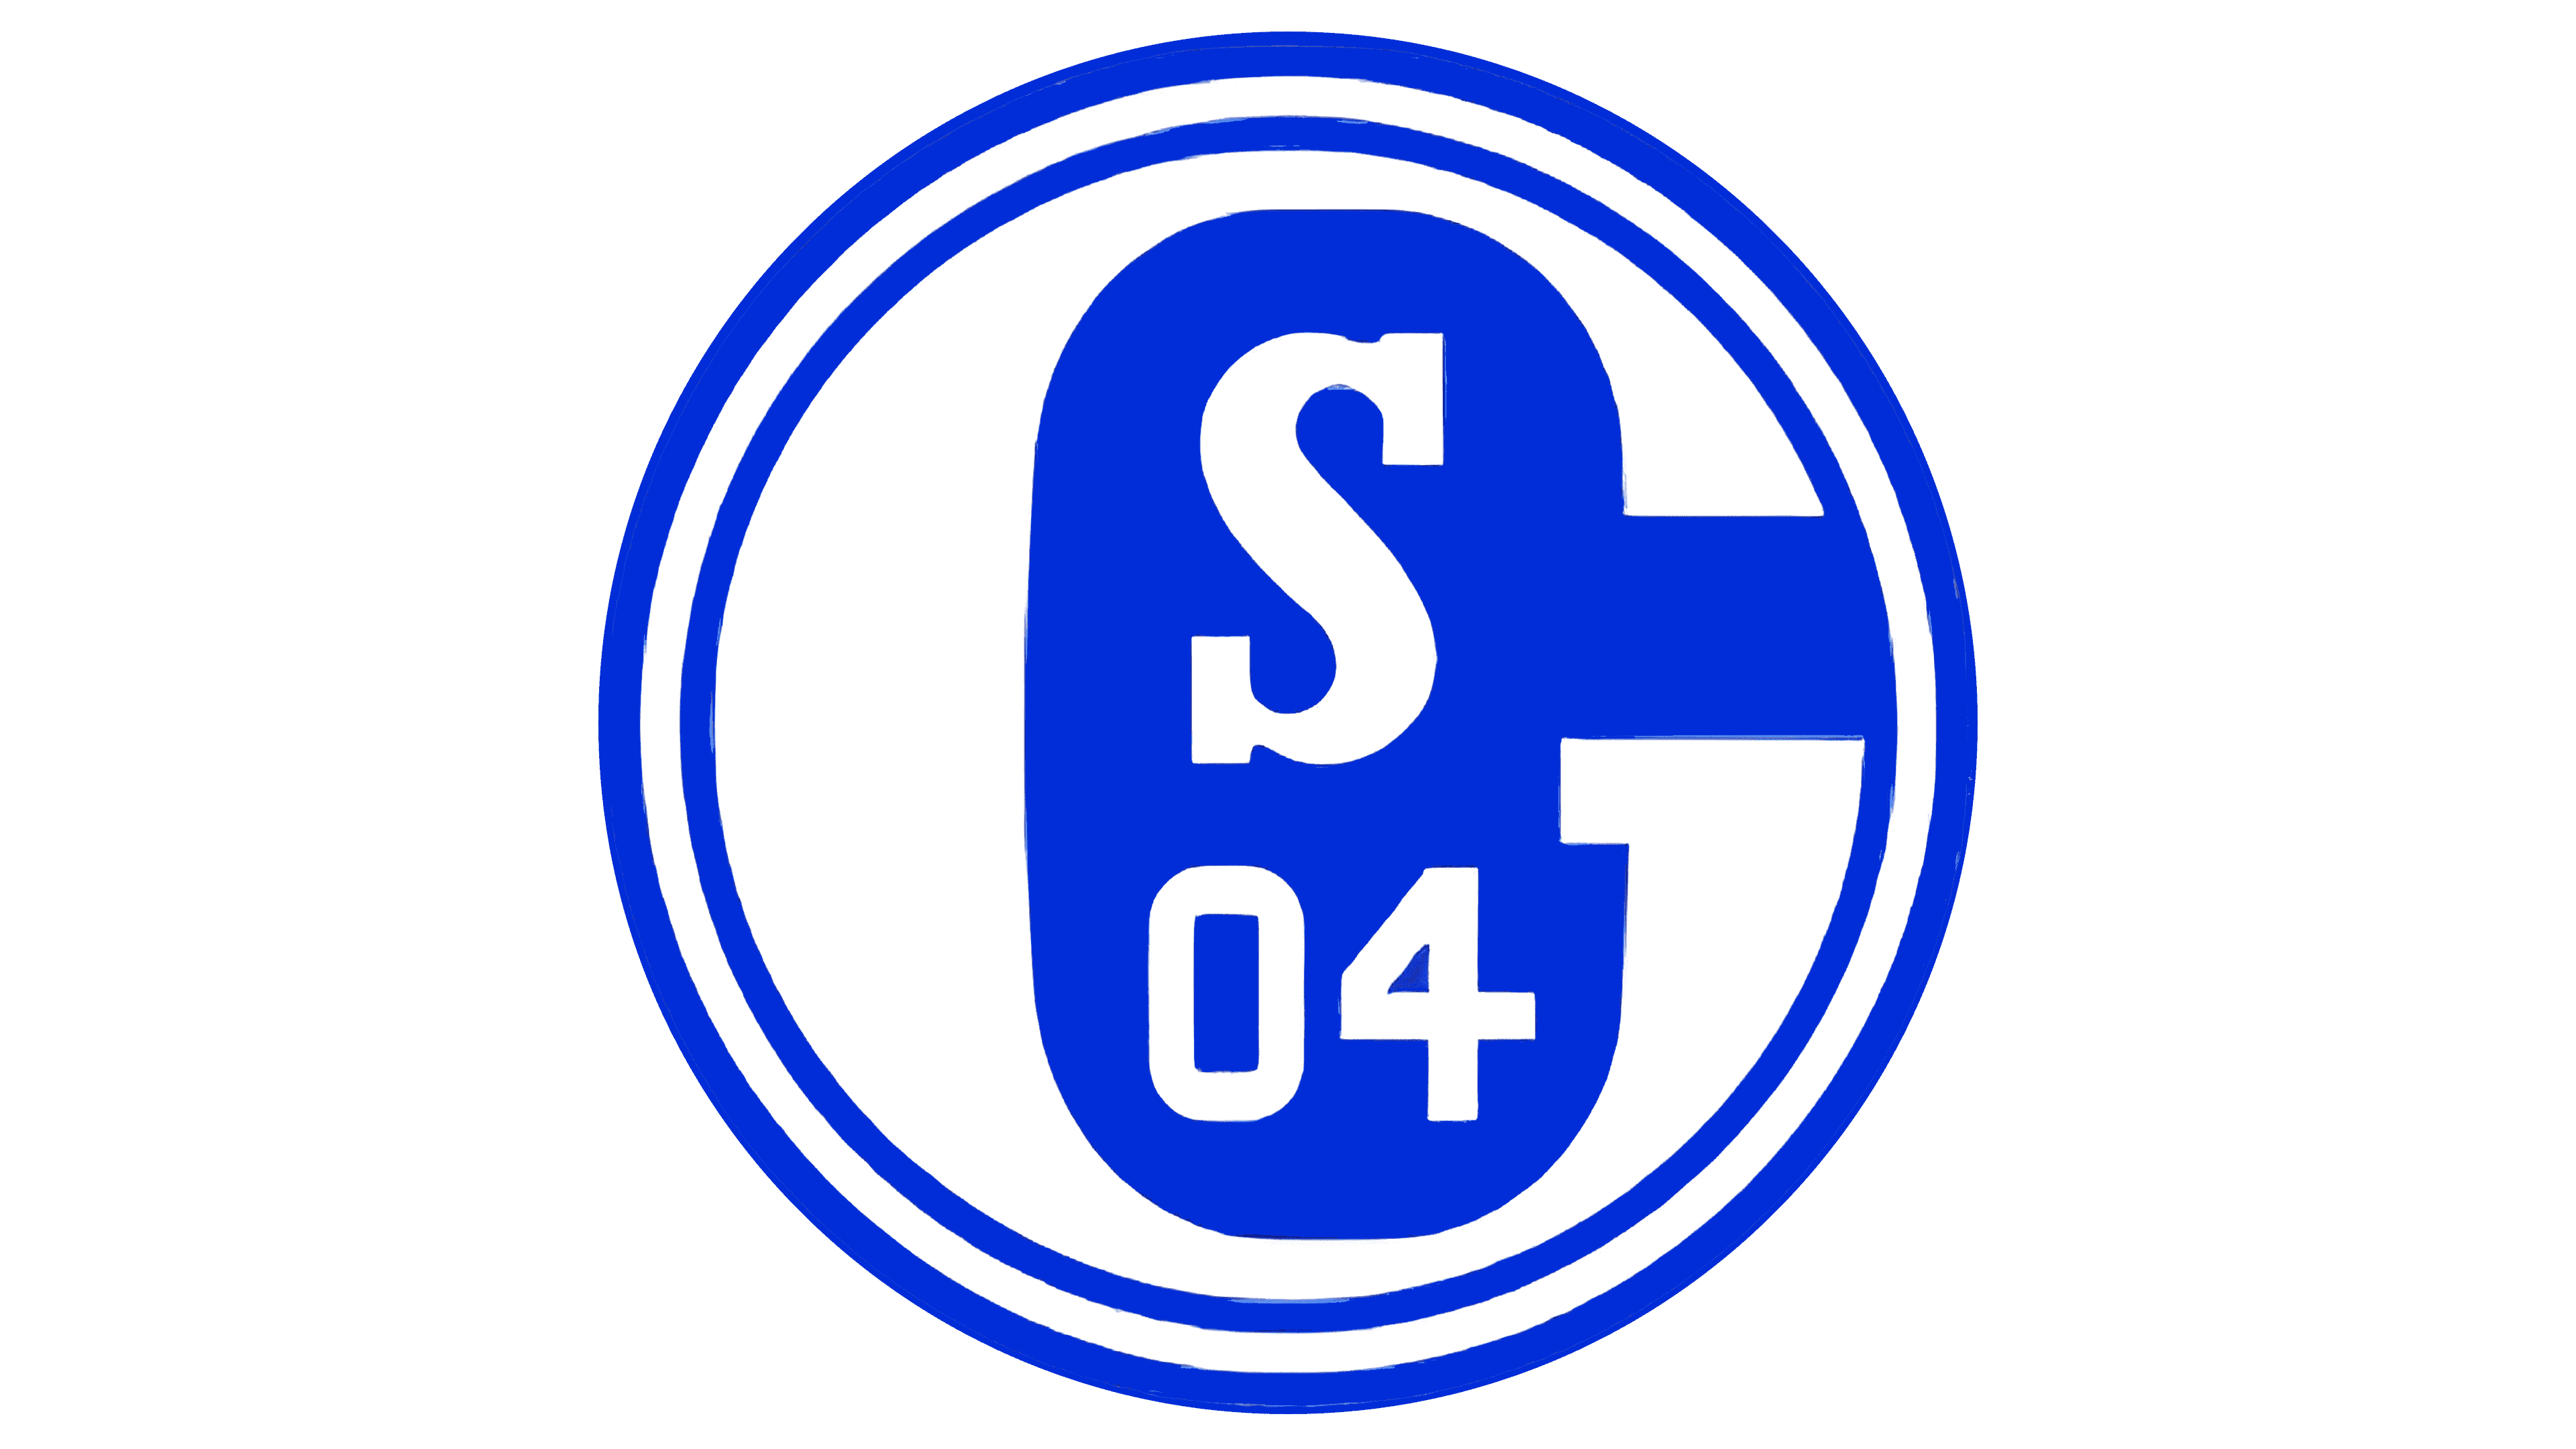 54 9-14161-54 69400183 FC Schalke 04 Ring Emblem S04 Gr 